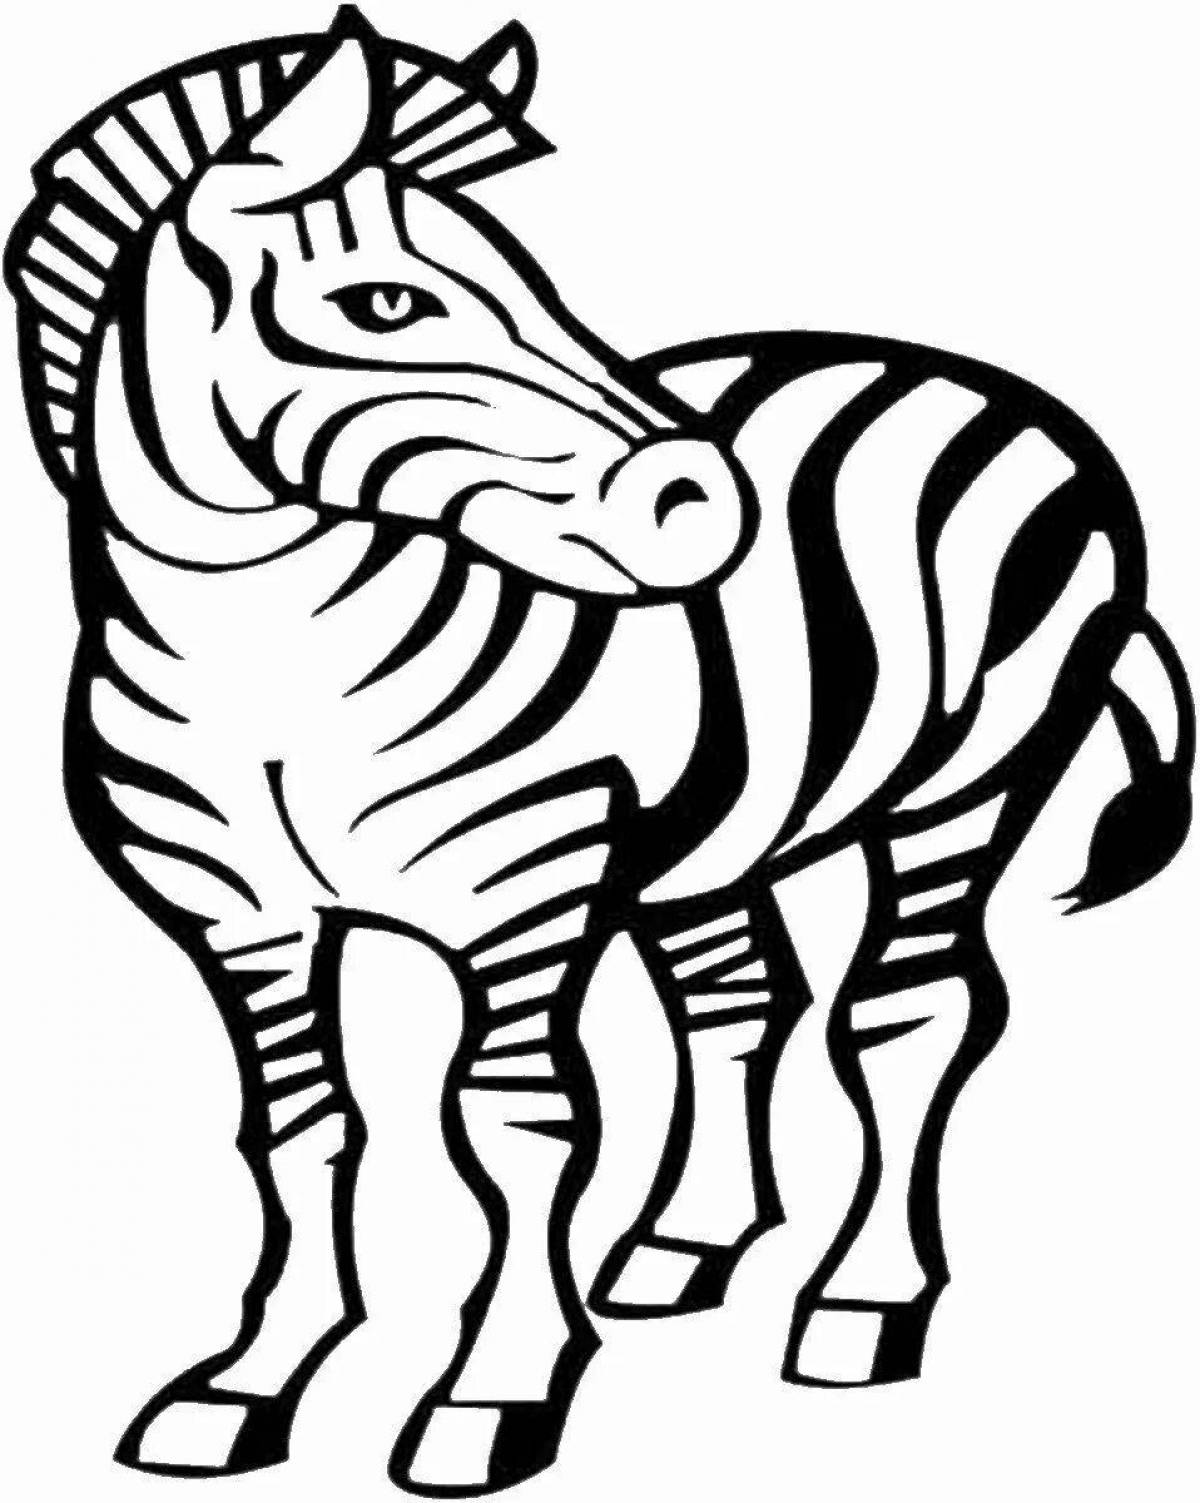 Забавная раскраска зебра для детей